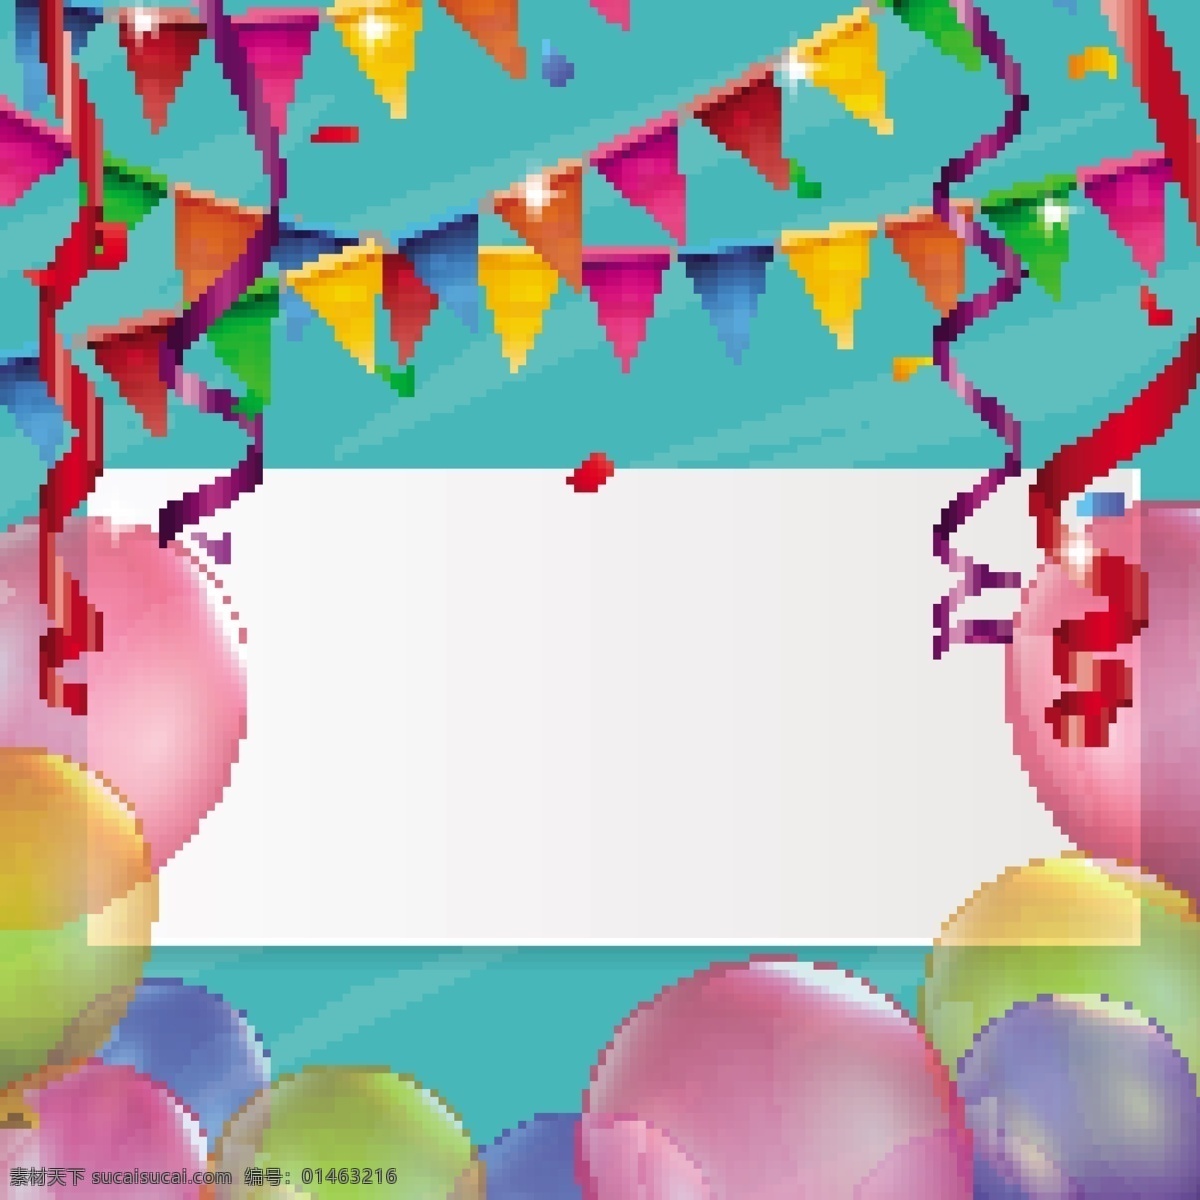 生日快乐 生日 气球 节日 庆祝 生日祝福 生日卡片 生日背景 生日素材 节日祝福爱心